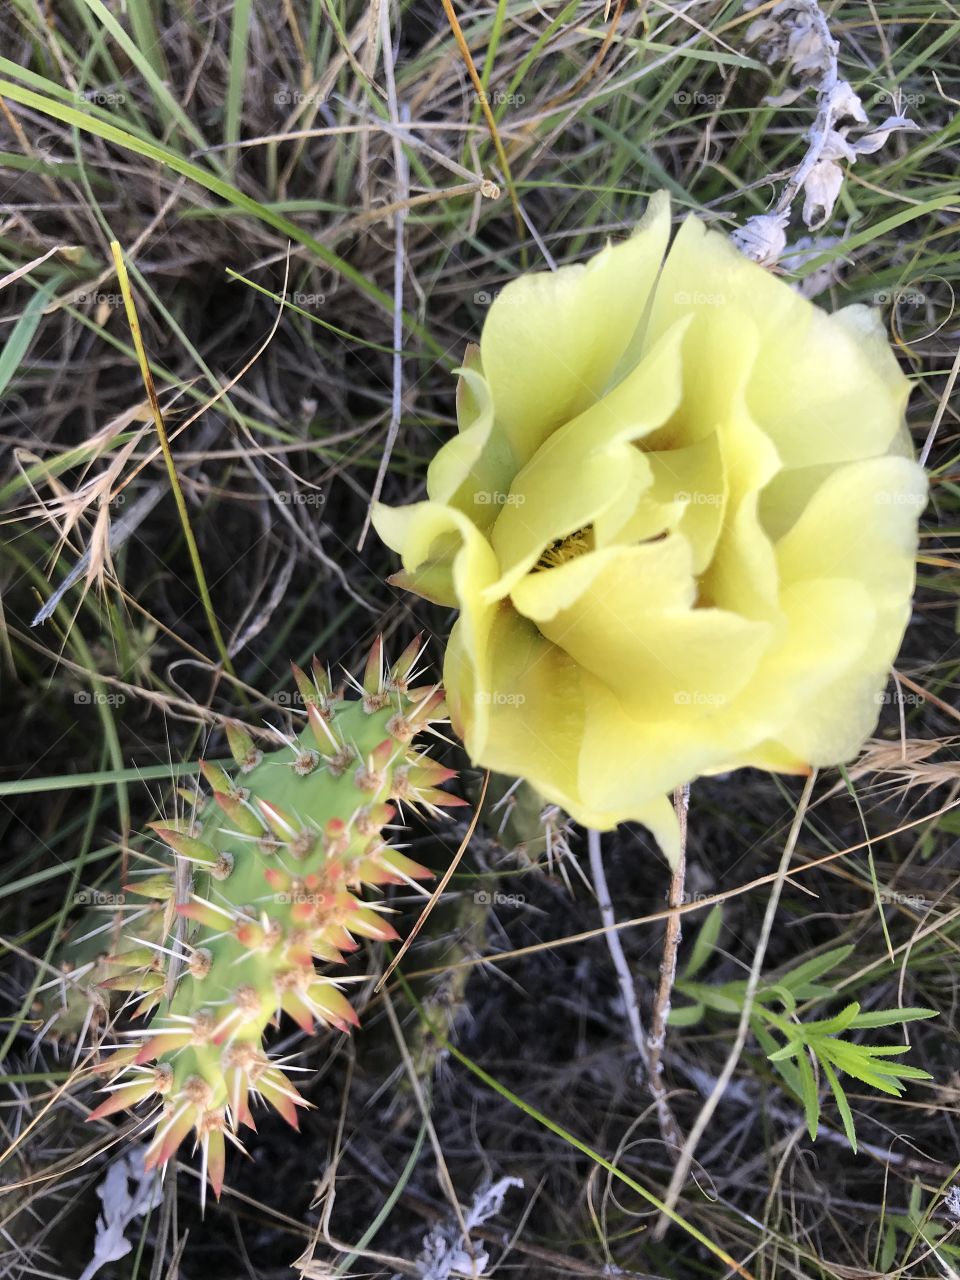 Wild Cactus on the South Dakota prairies